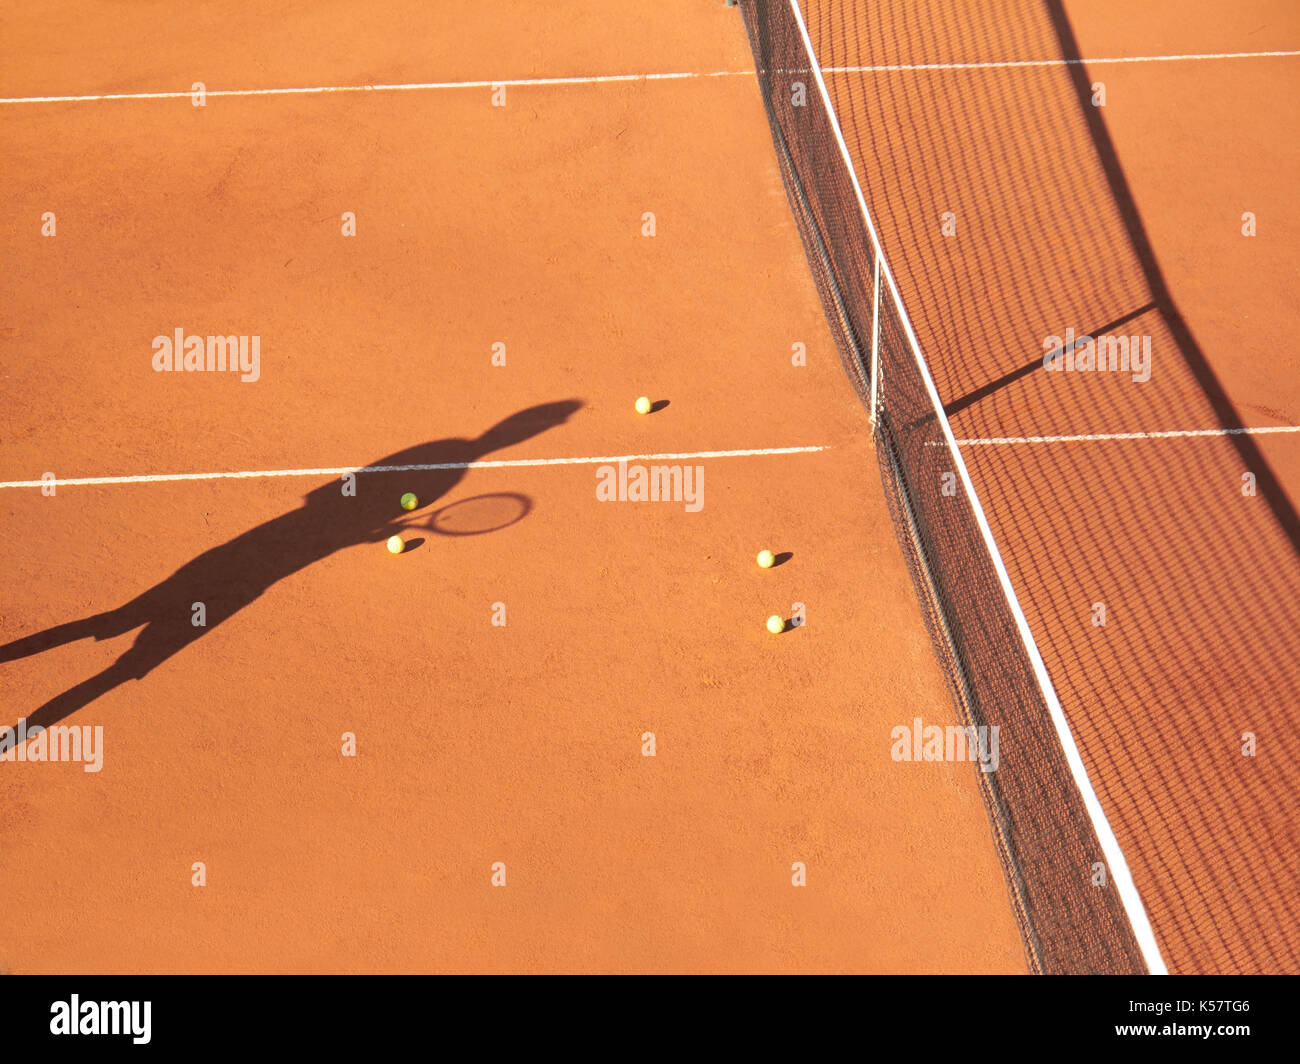 Ombre de joueur de tennis à net avec scatttered les balles de tennis sur terre battue Banque D'Images